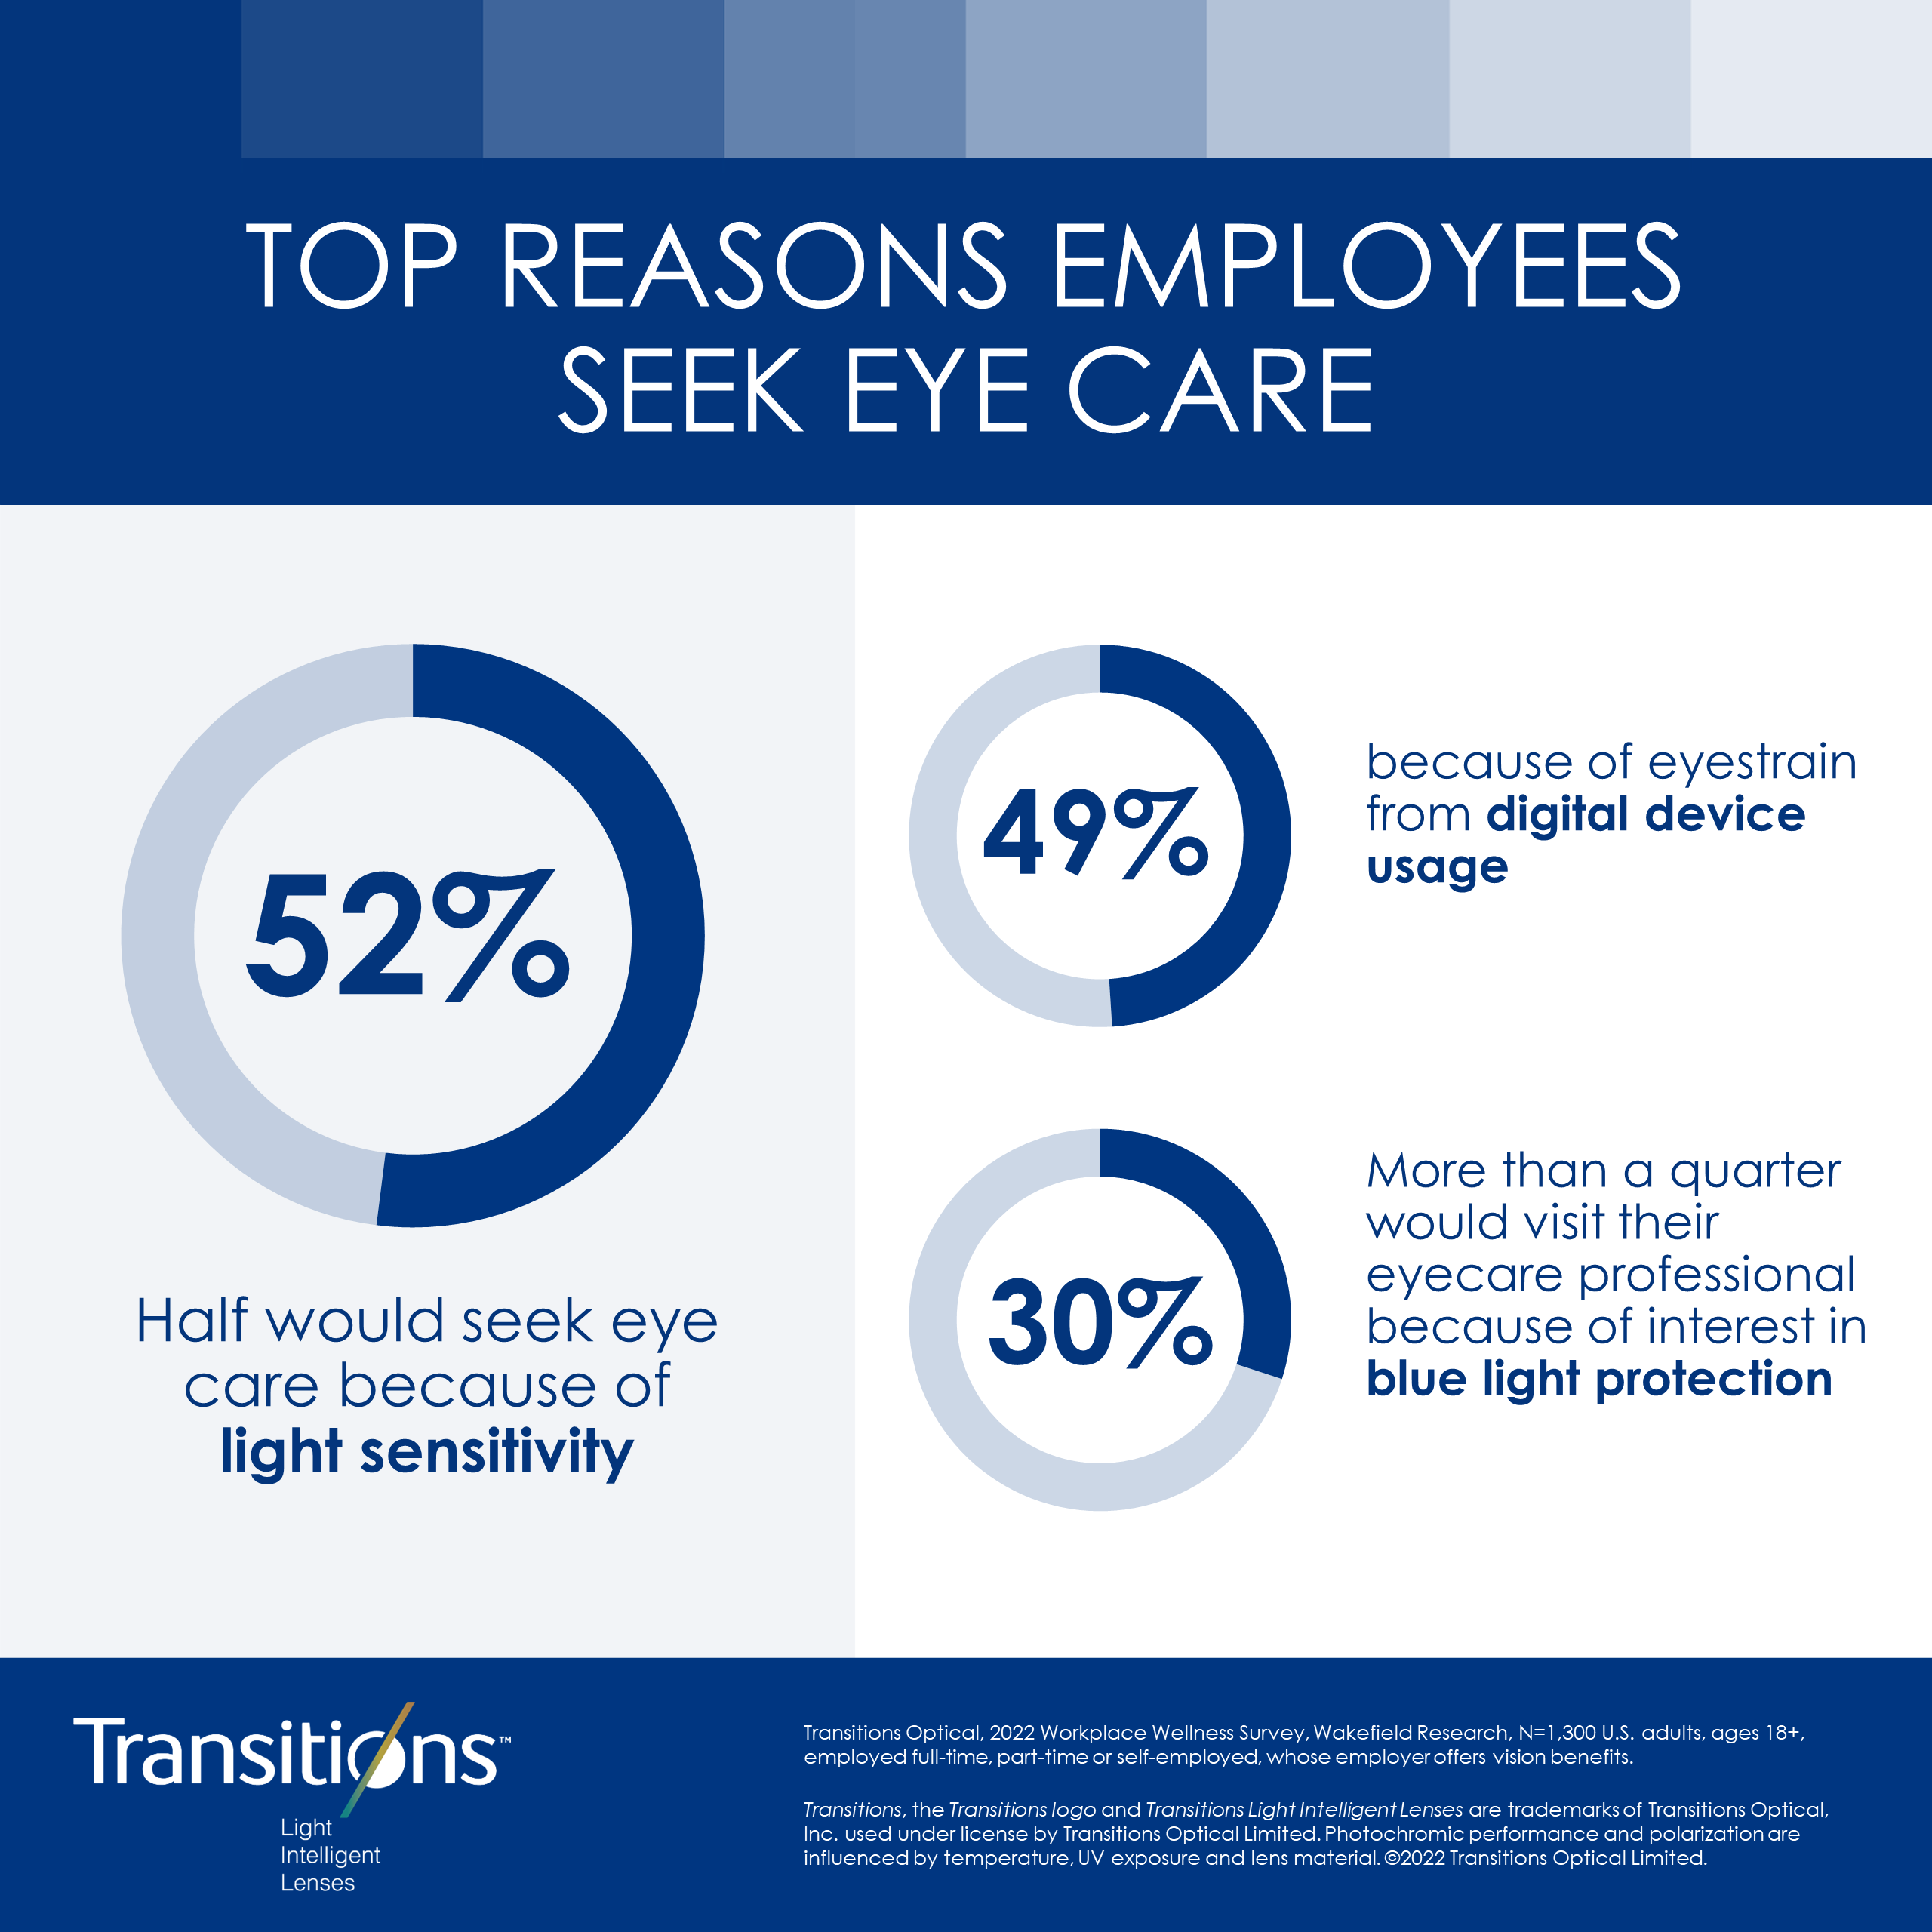 Top Reasons Employees Seek Eye Care